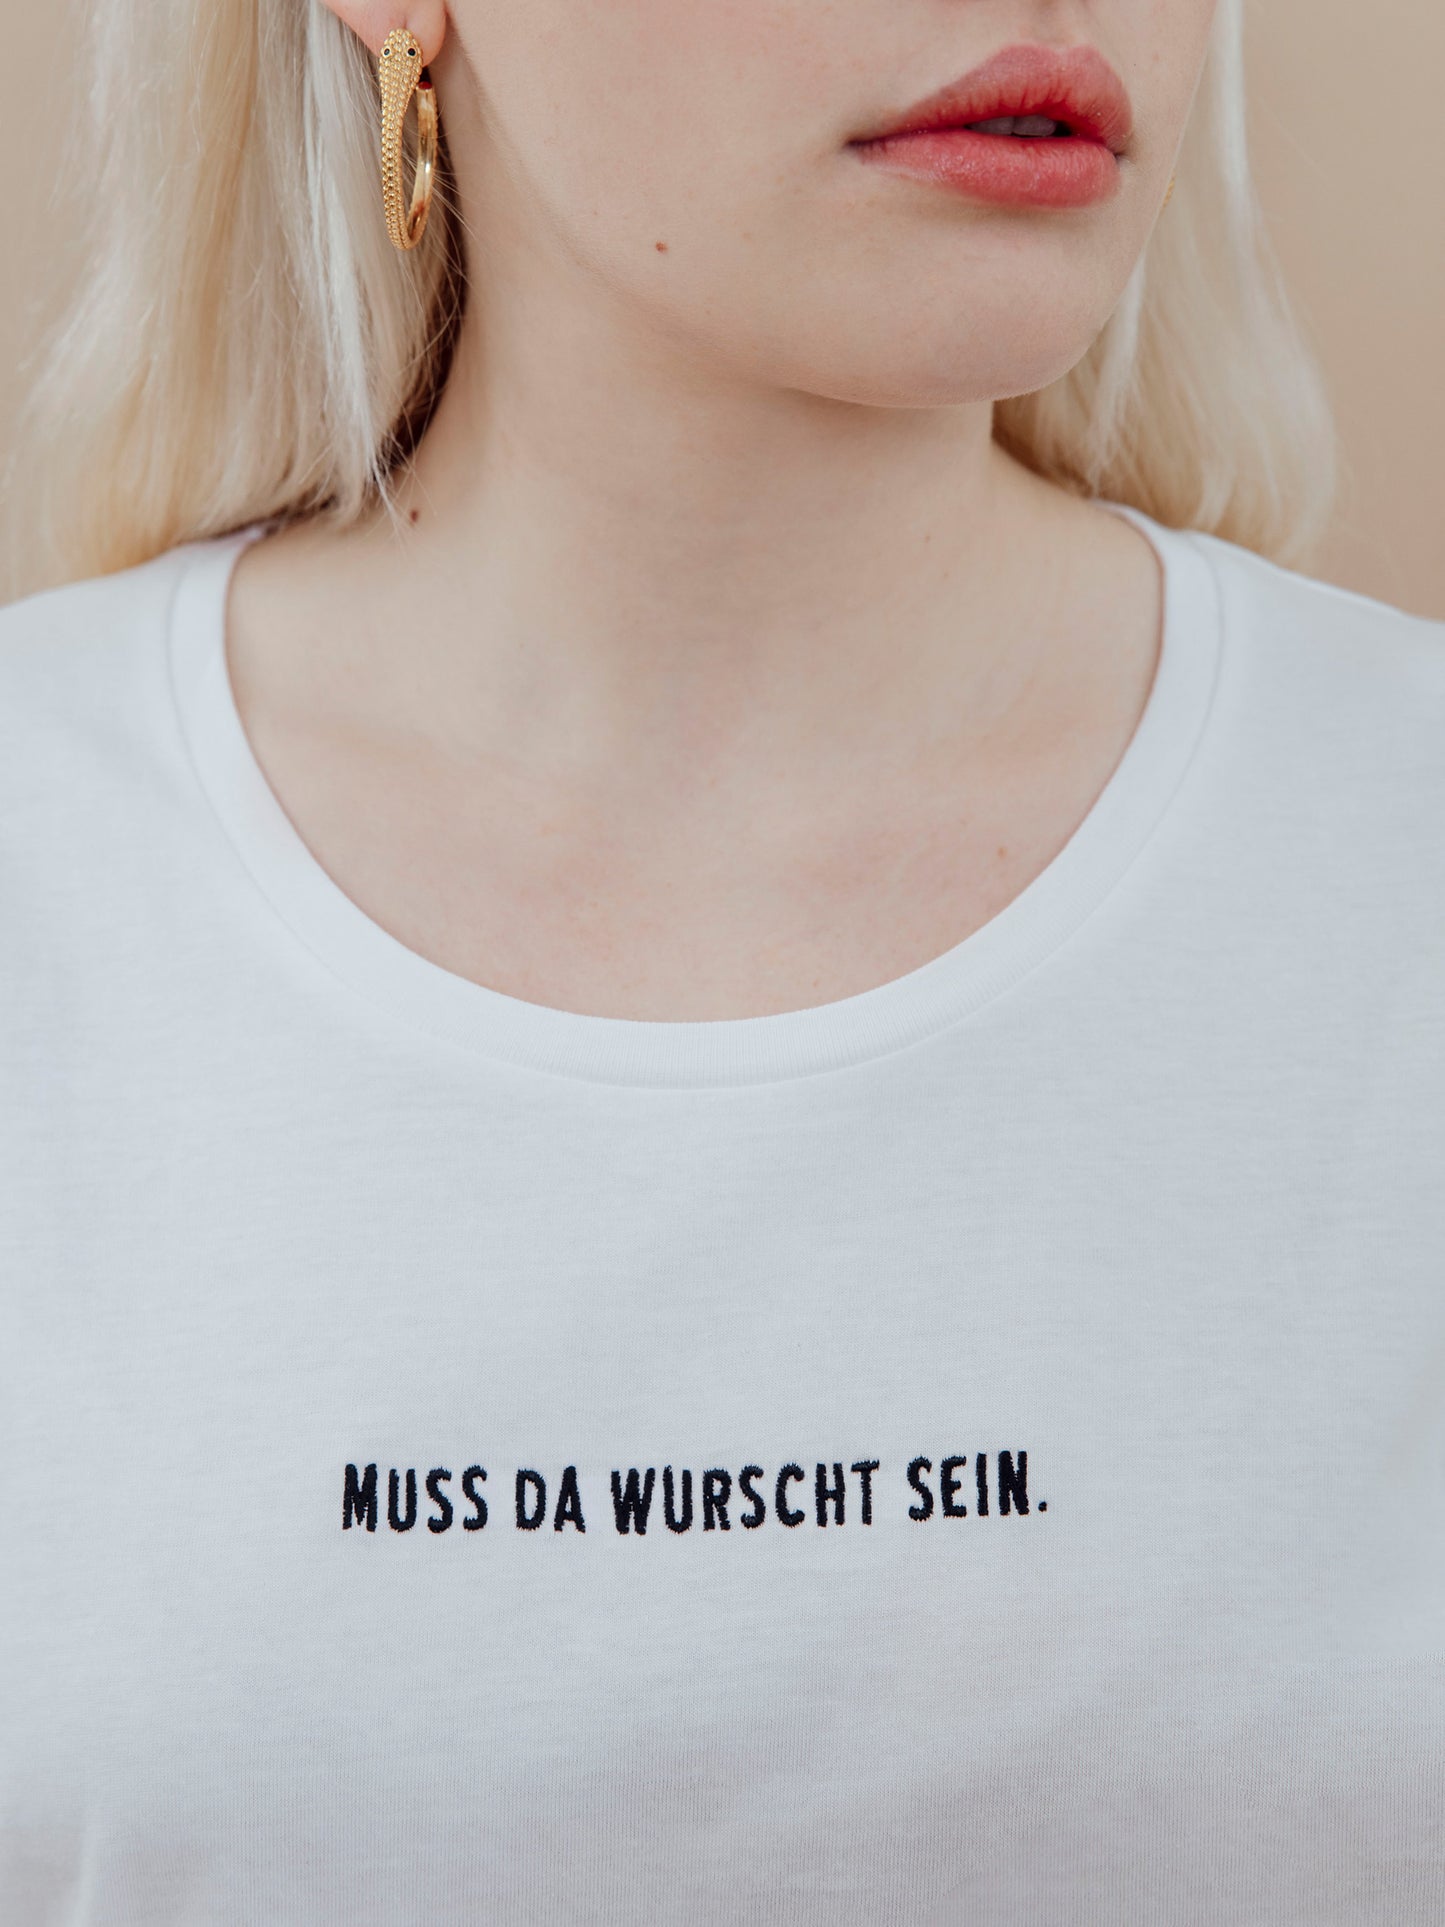 KITSCH BITCH Muss da Wurscht sein Embroidery Roll Up T-Shirt